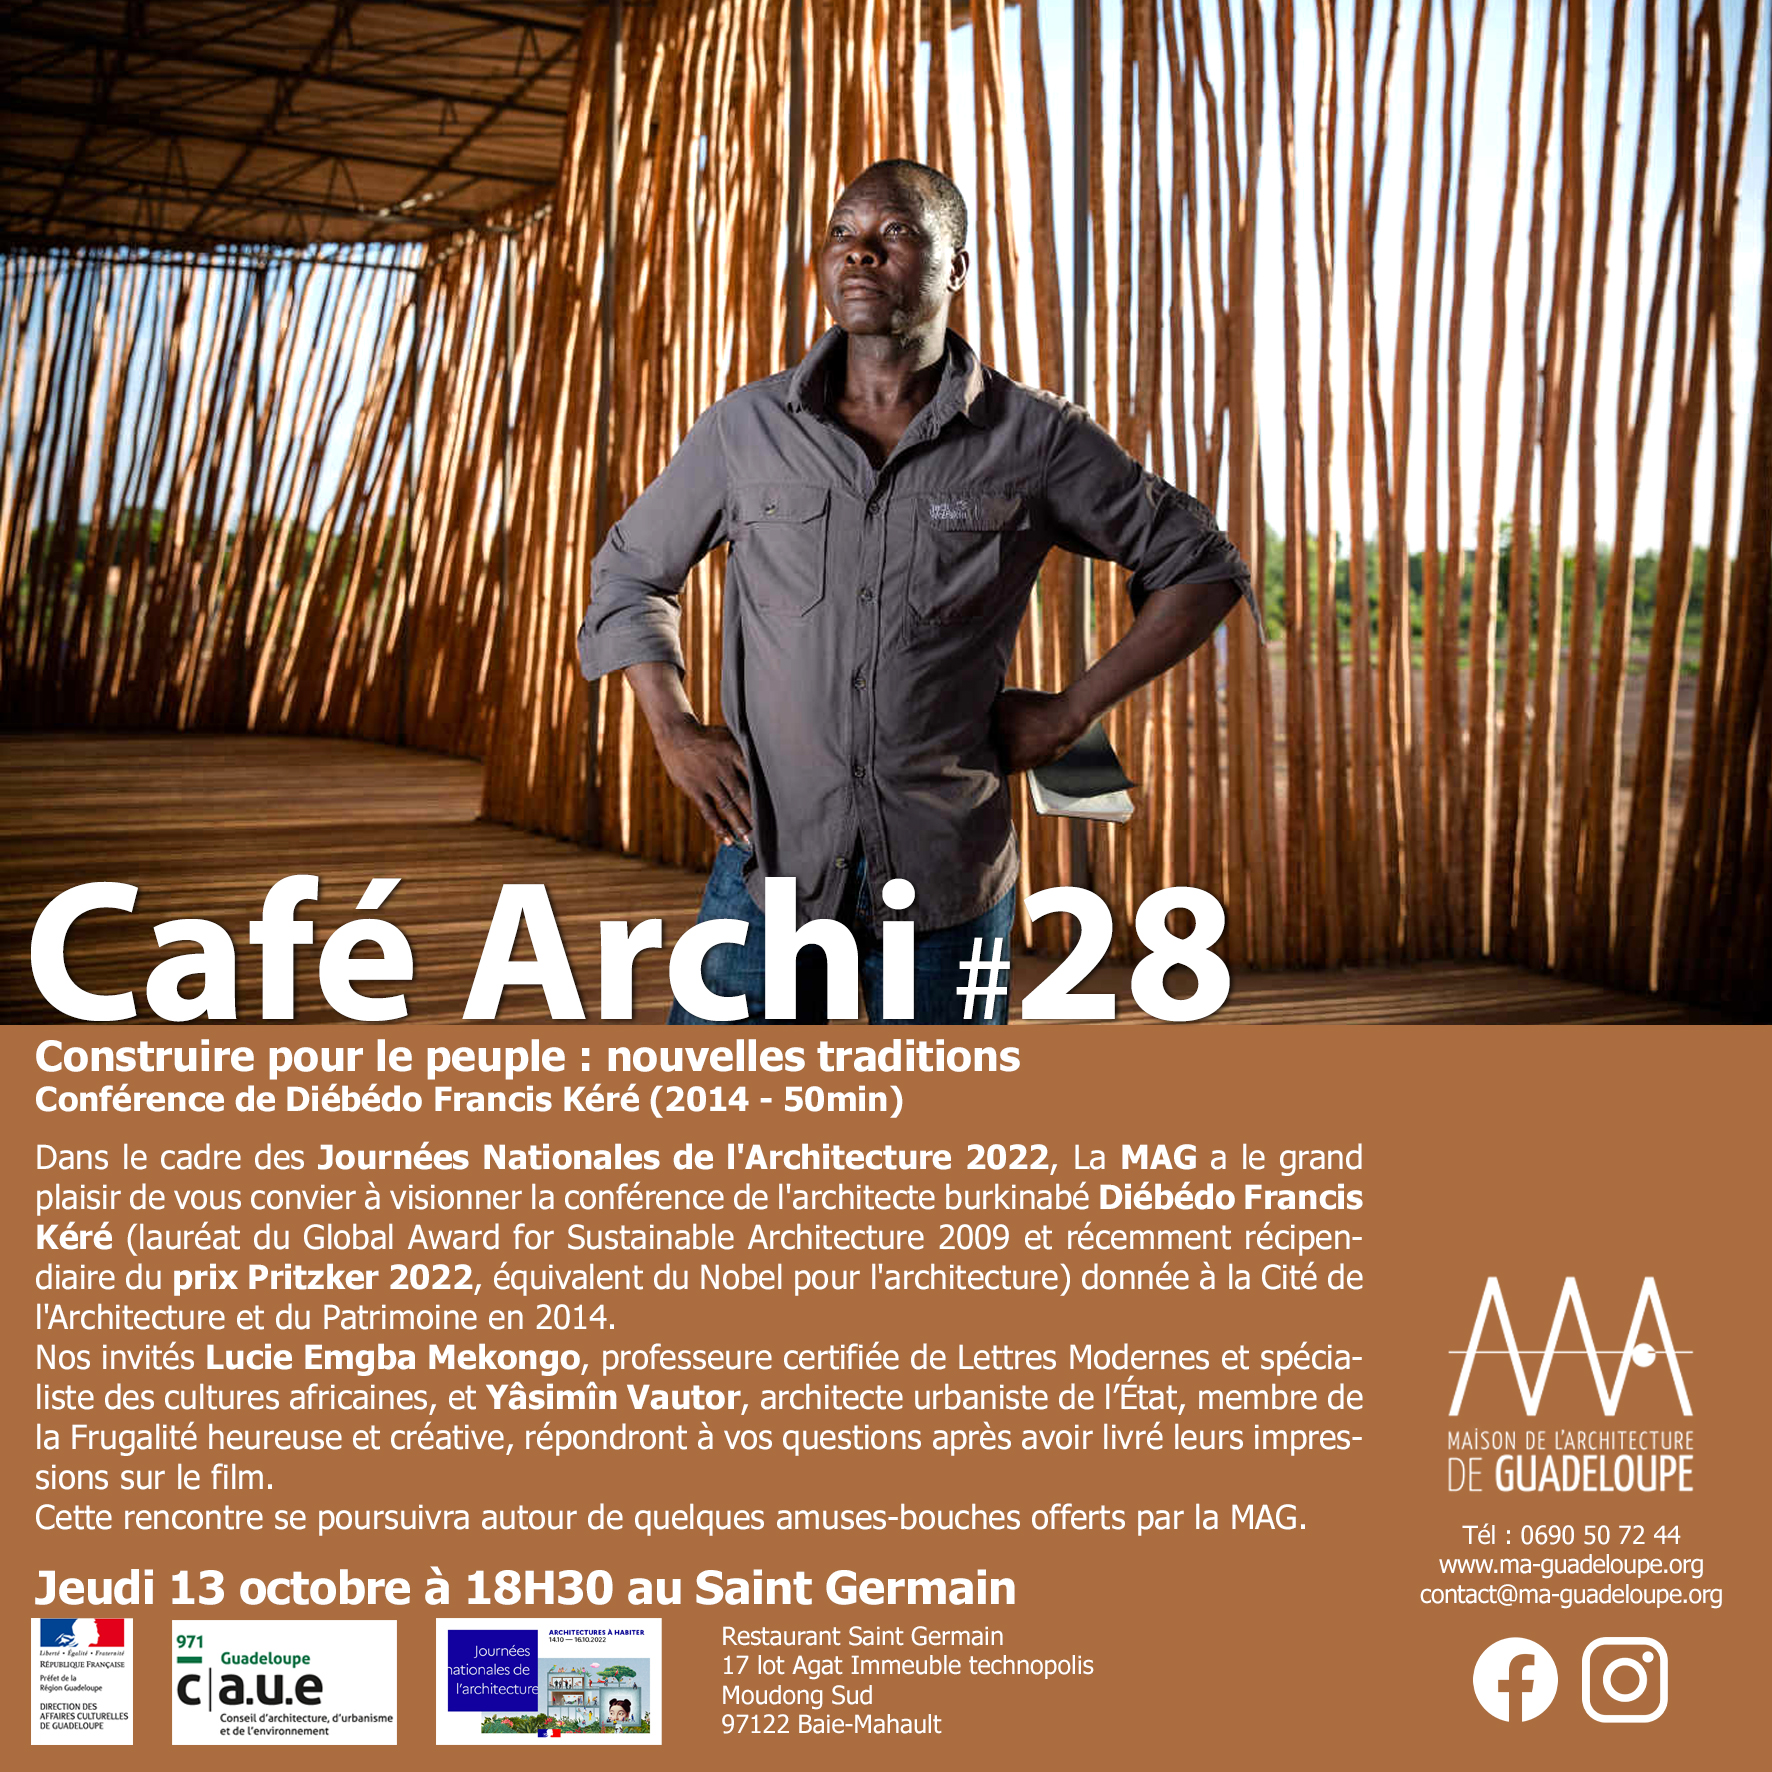 You are currently viewing Café Archi 28 – Construire pour le peuple : nouvelles traditions, le jeudi 13 octobre à 18h30